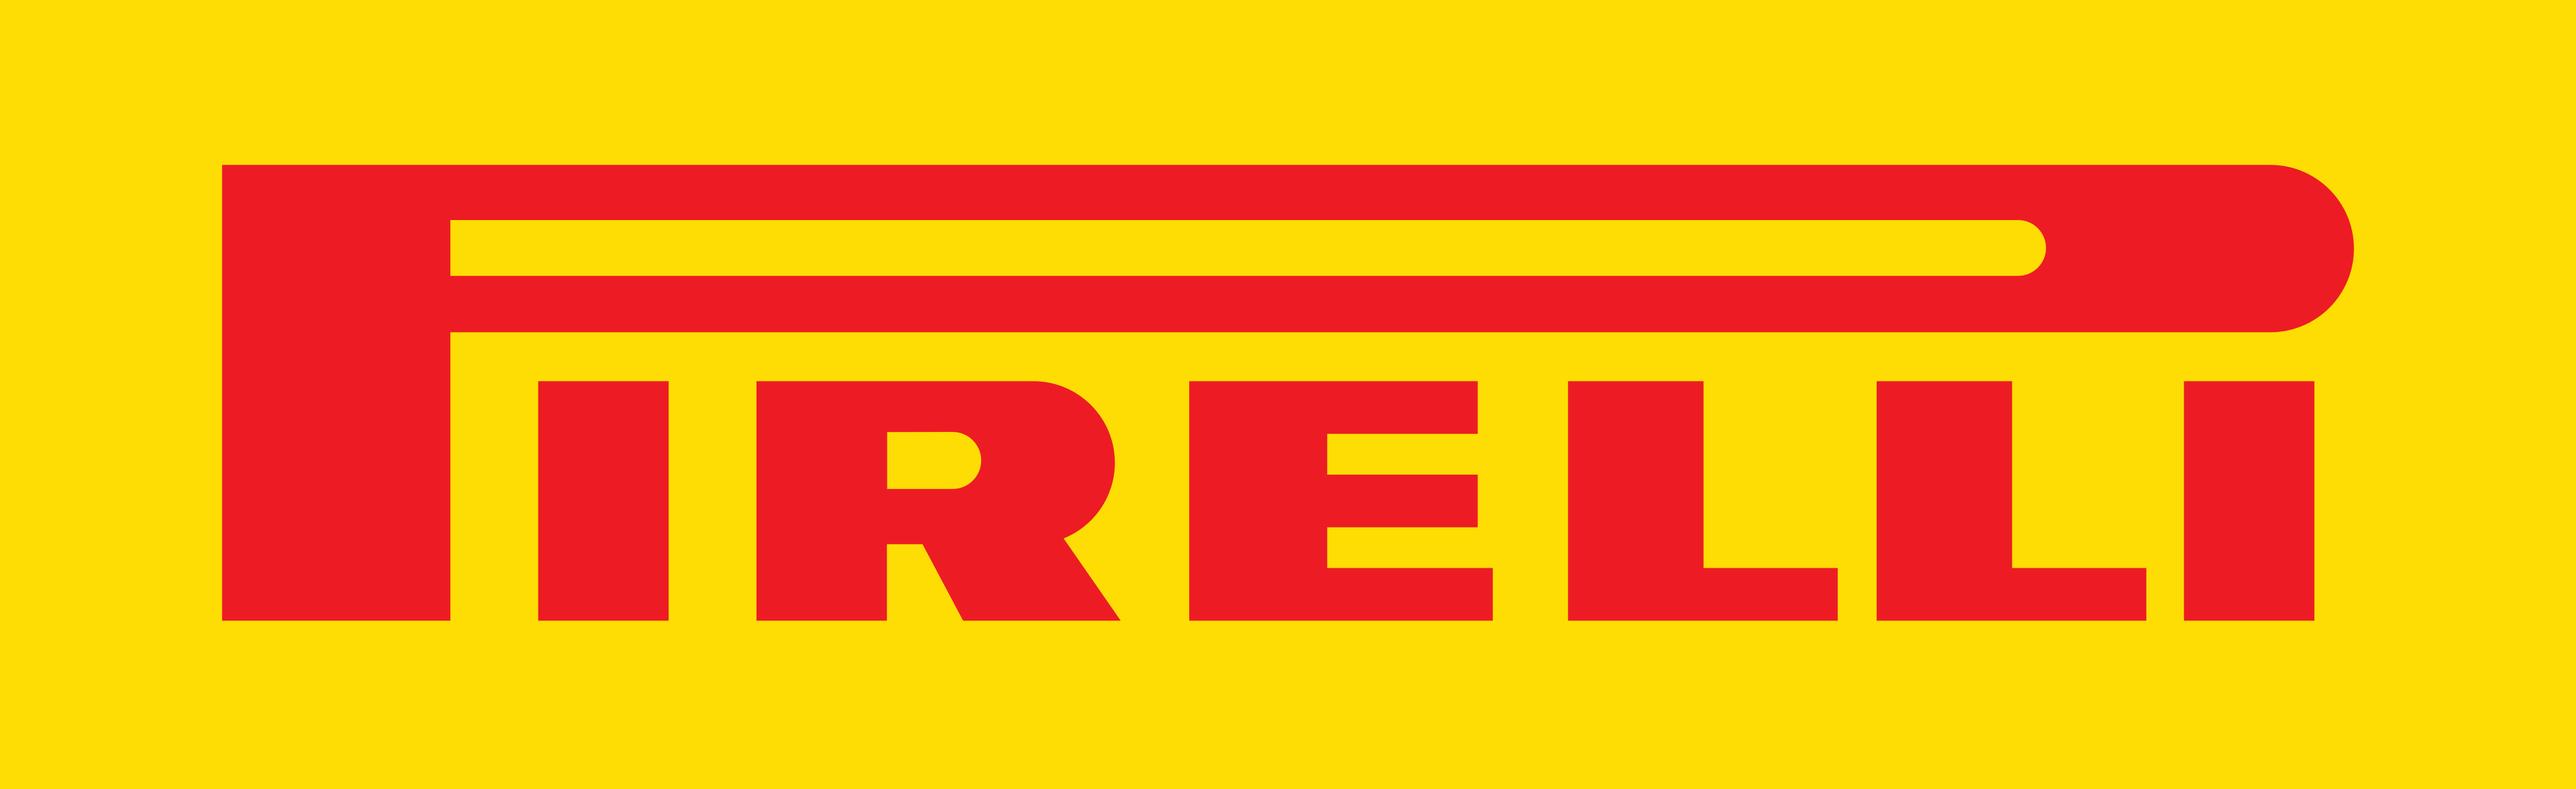 Esta imagem se refere ao logotipo da fabricante de pneus Pirelli